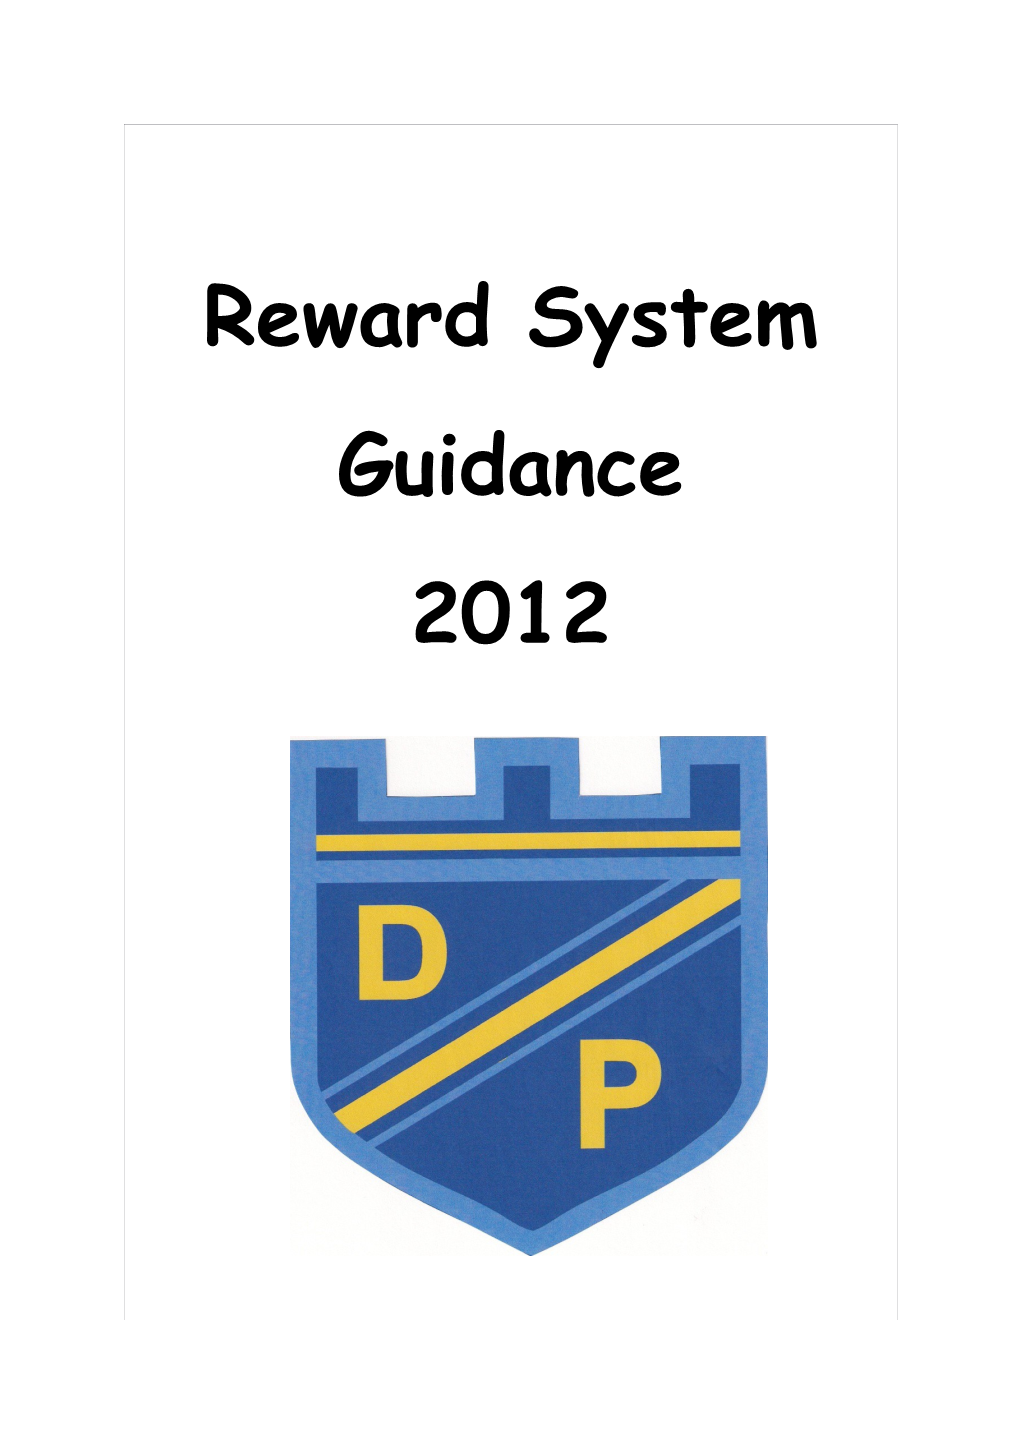 Outline of House Reward System